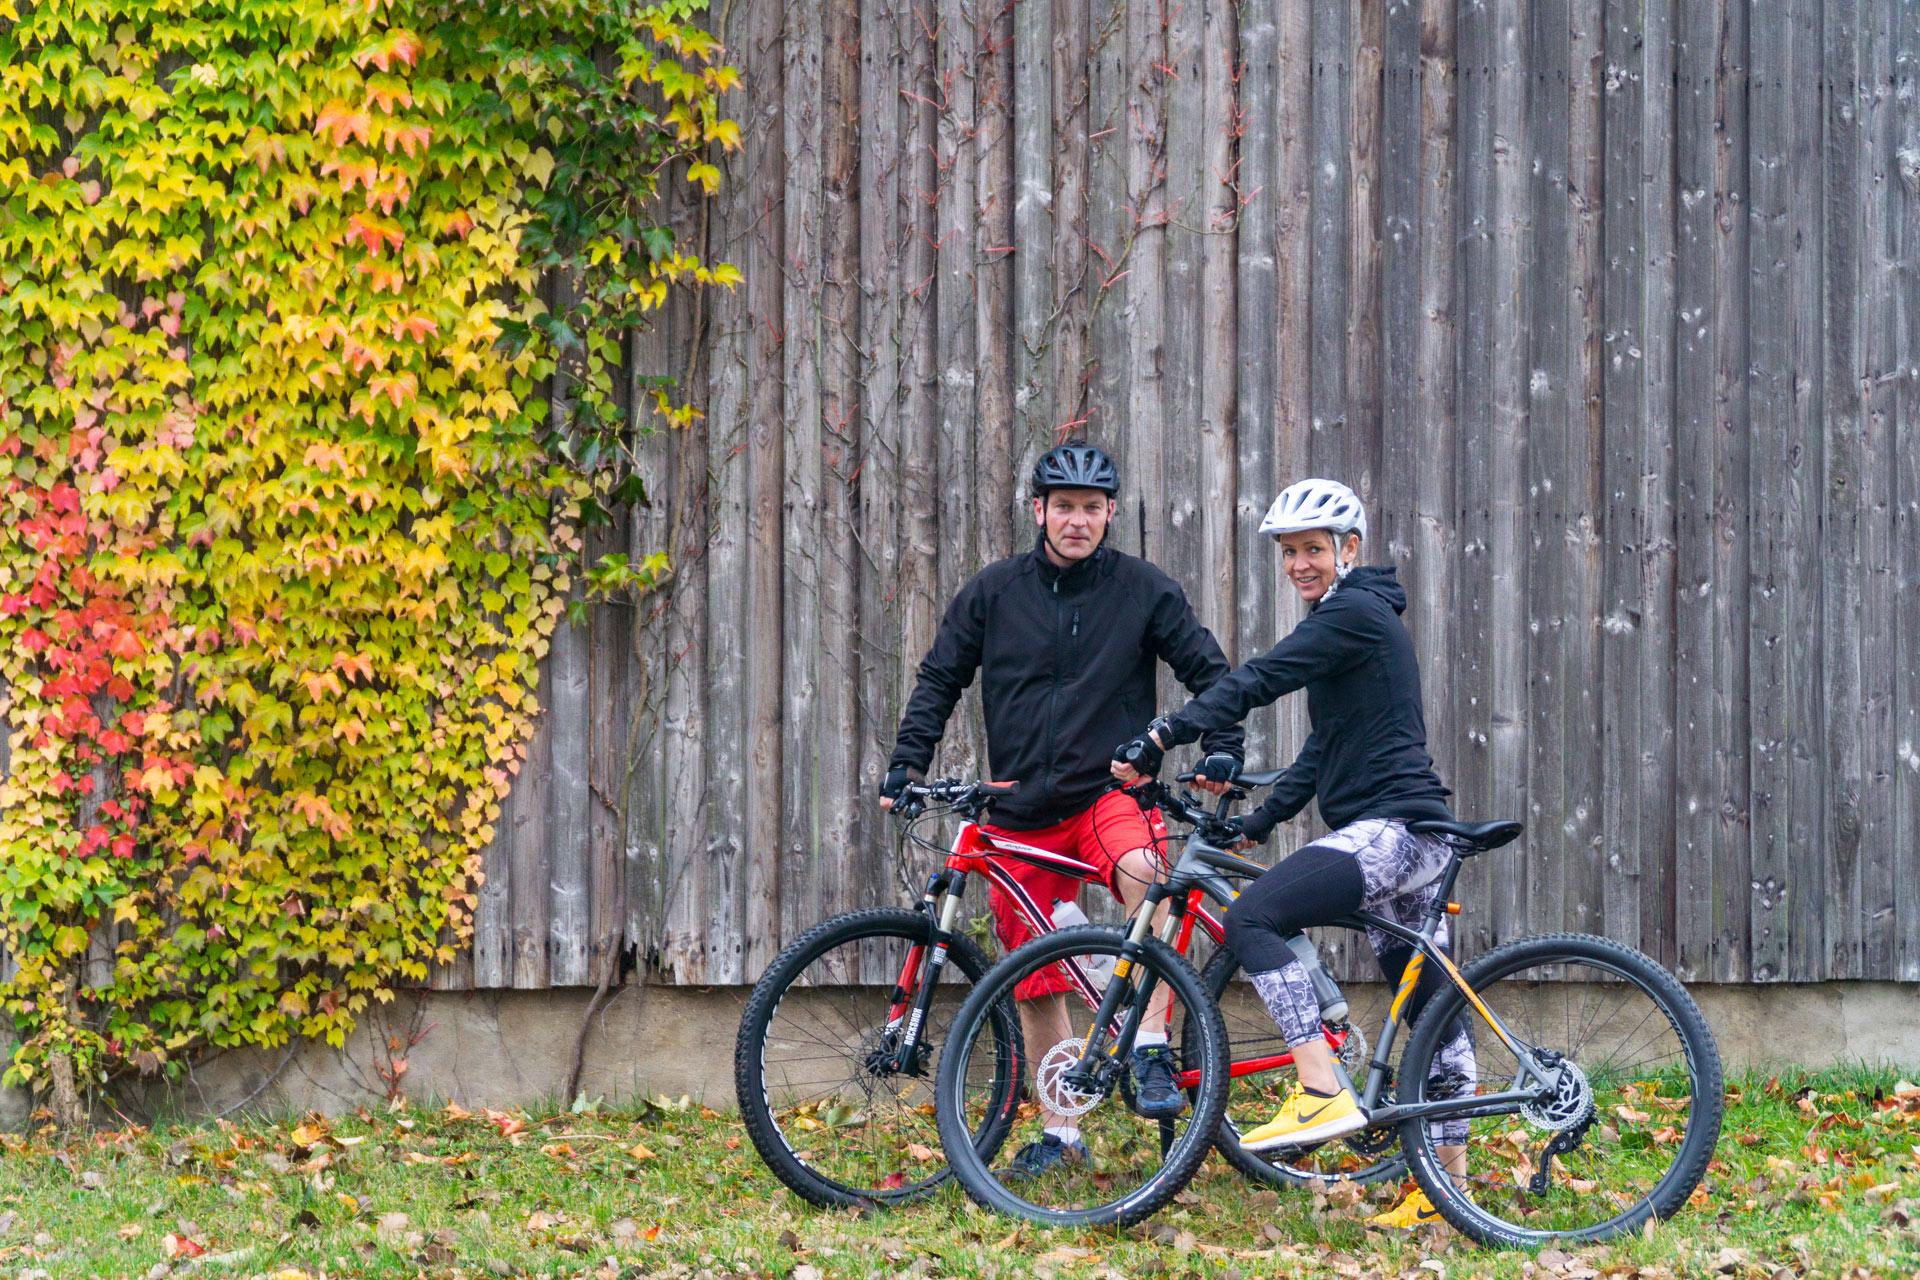 Lars D. und seine Frau Britta P. sind beide privat leidenschaftliche Radsportler und beruflich im Polizeidienst tätig.